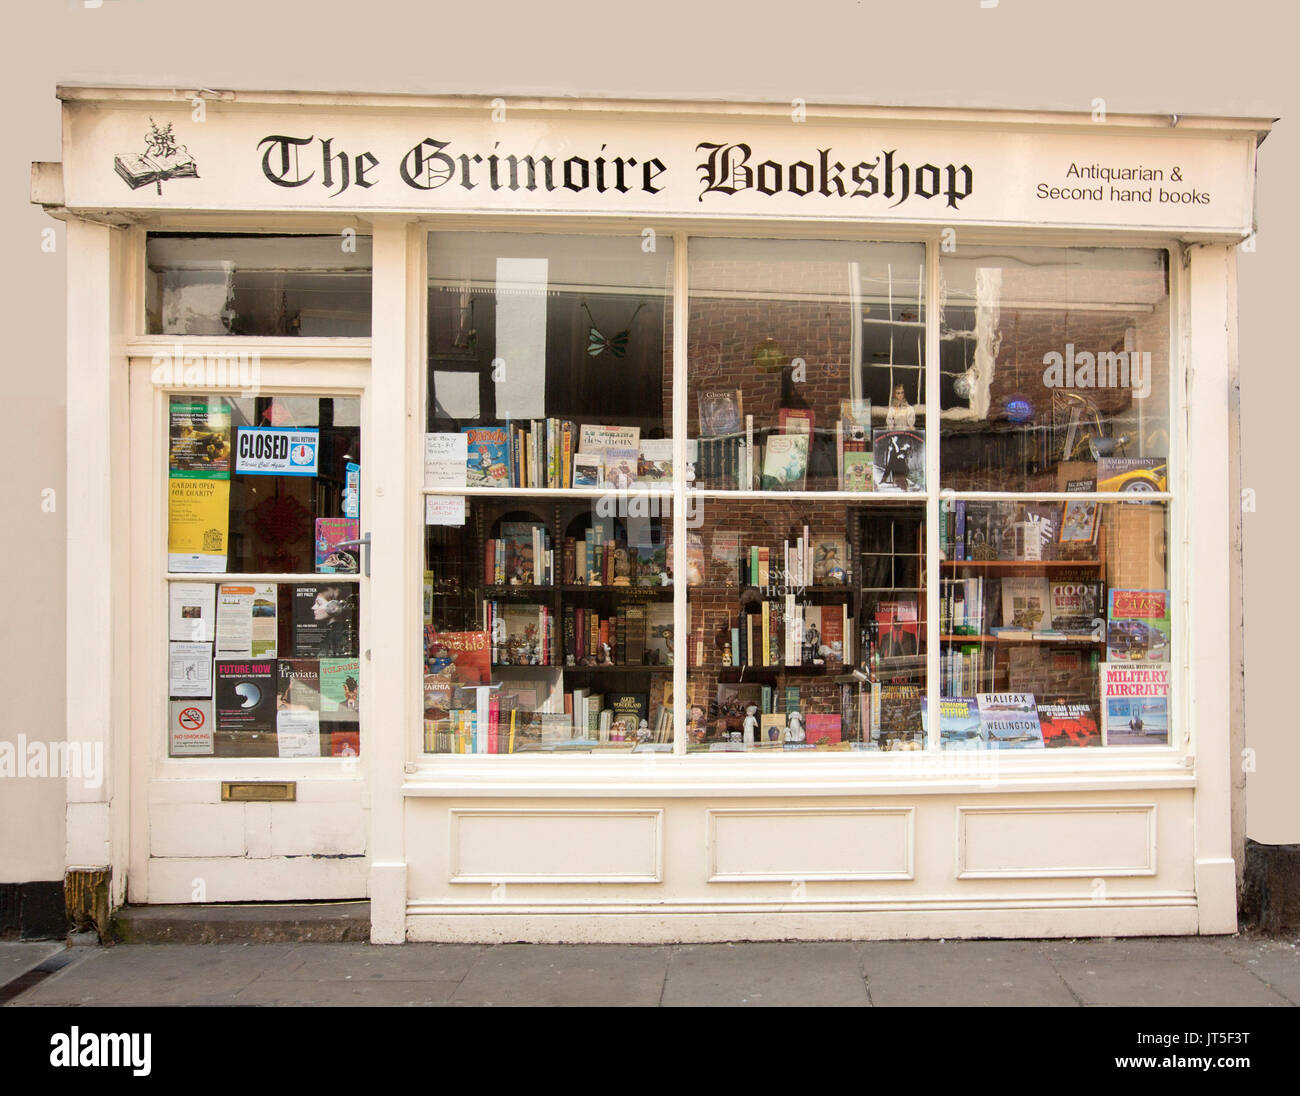 Di seconda mano bookshop, il Grimoire, crema ordinata facciata dipinta con finestra del vecchio edificio stipati con libri, nella storica città di York, Inghilterra Foto Stock